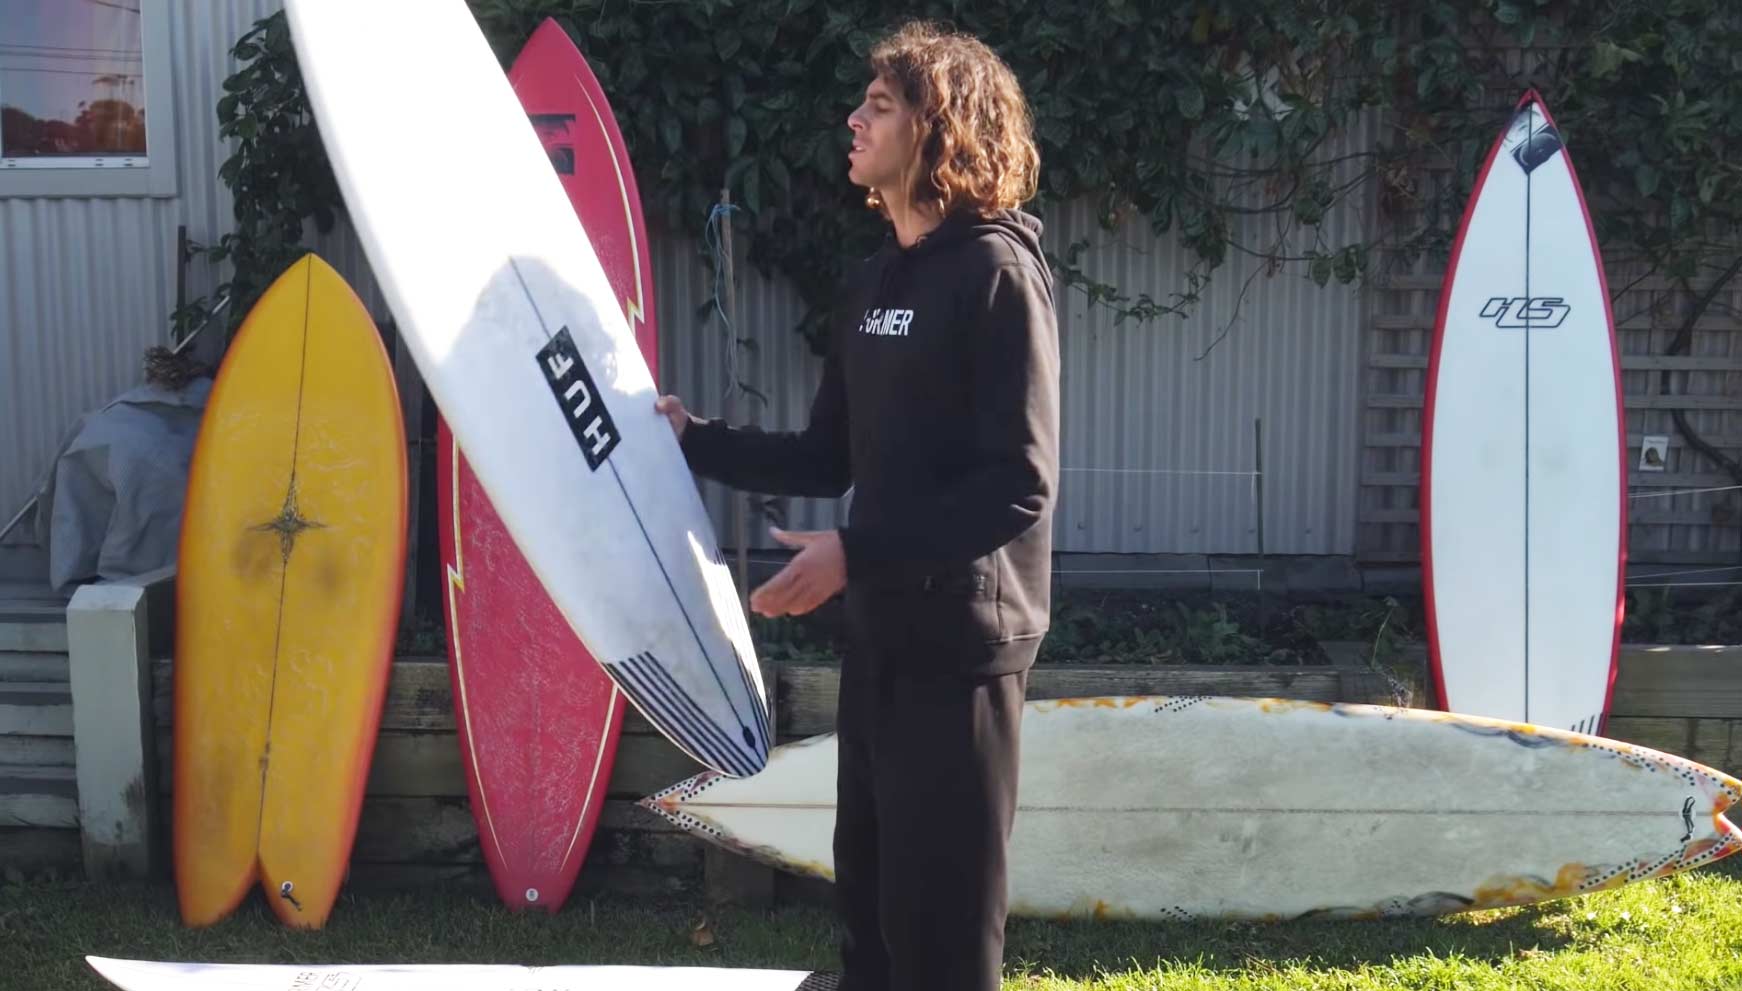 Craig Anderson surfboards